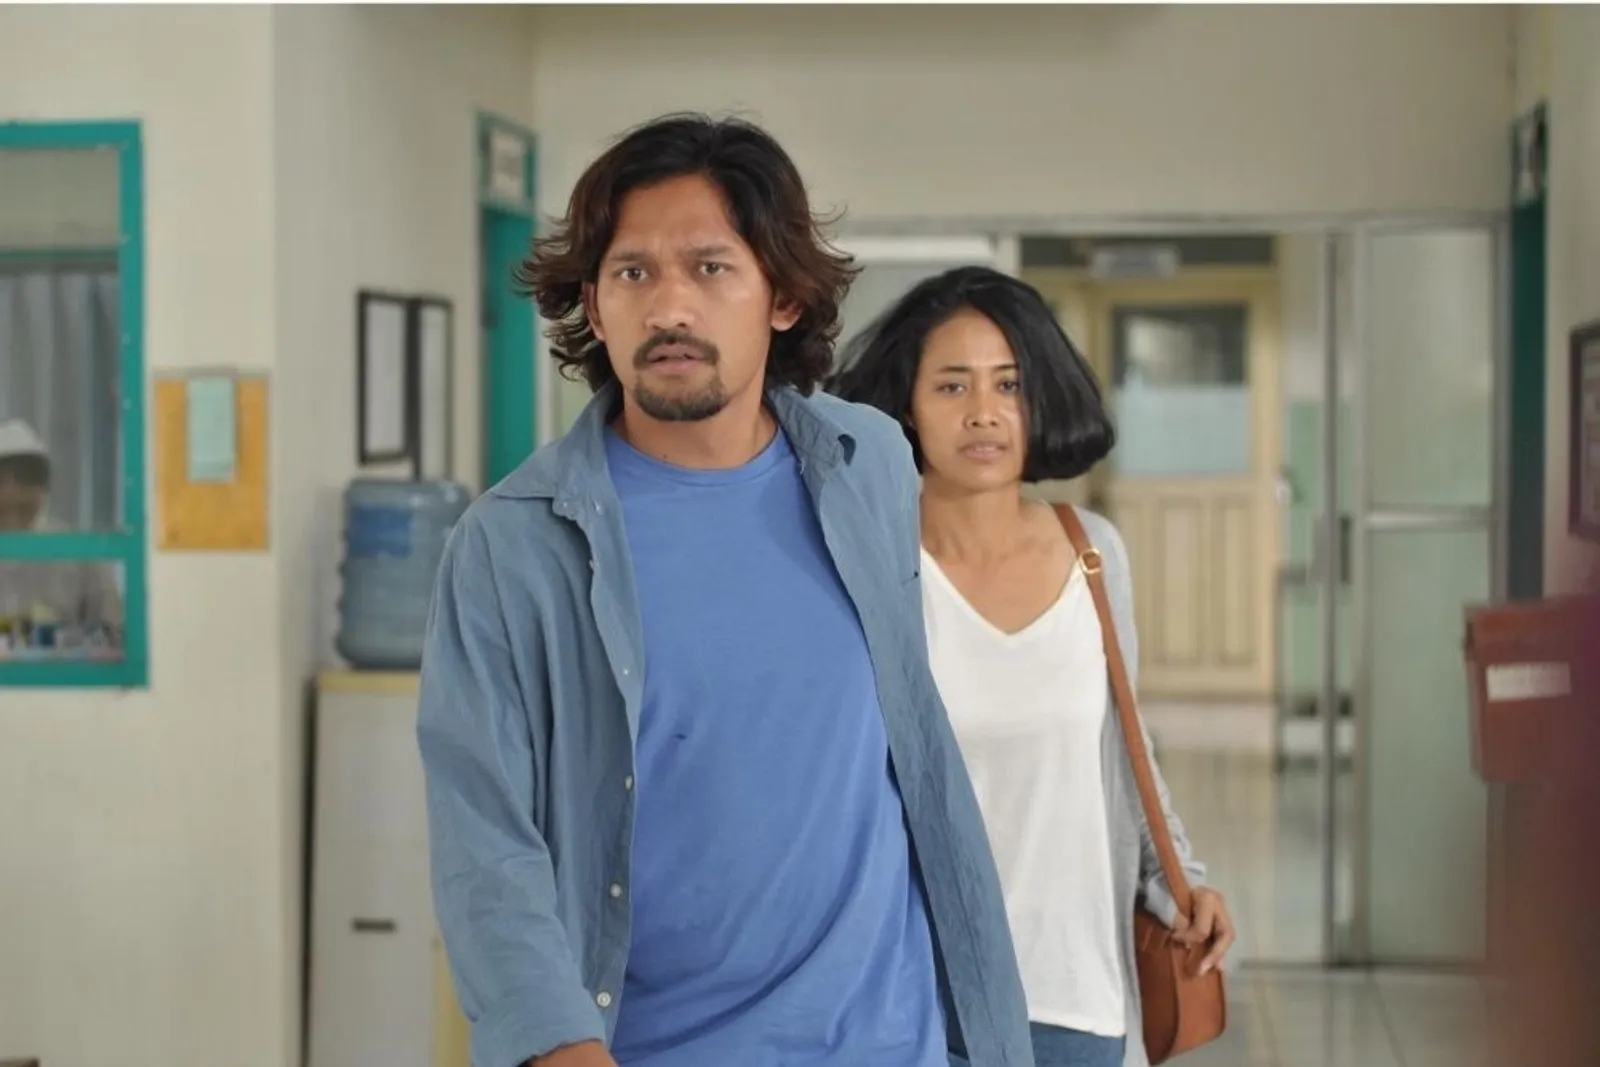 Sudah Tayang di Mola TV, Ini 5 Fakta Film 'Mudik' yang Wajib Disimak